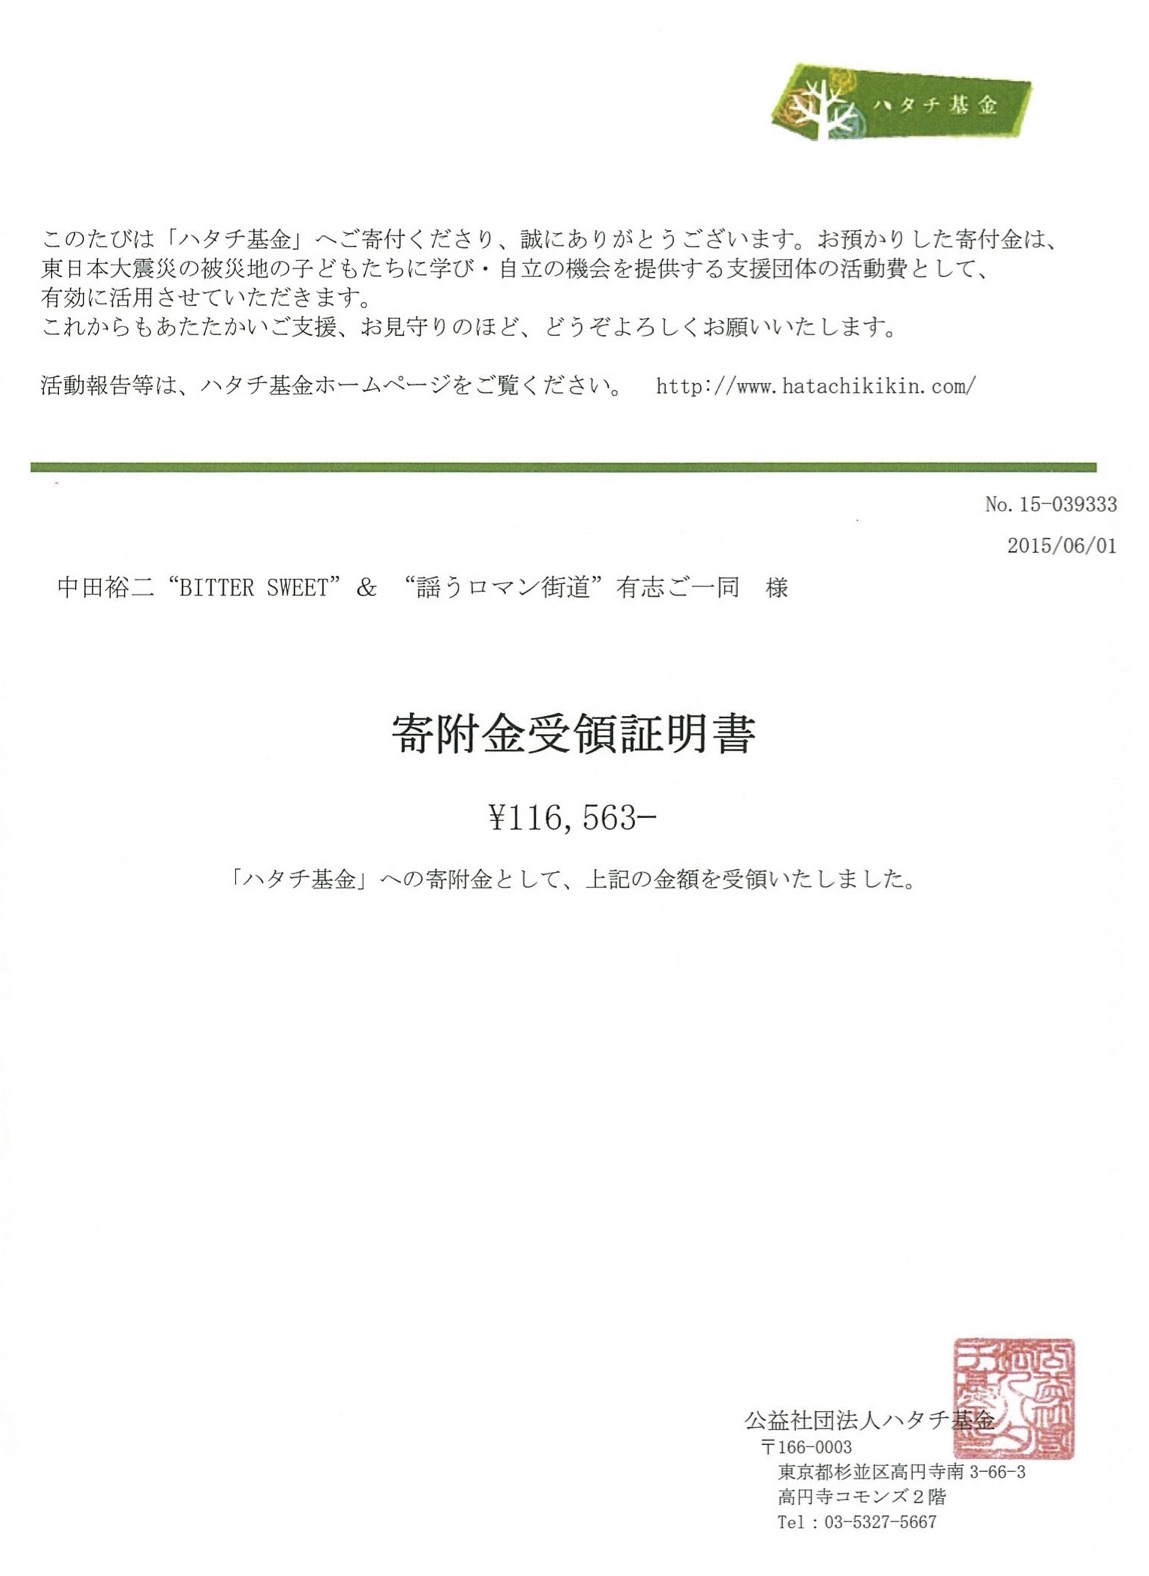 東日本大震災ならびに広島豪雨災害の各義援金額と寄付完了のご報告_b0220328_189596.jpg